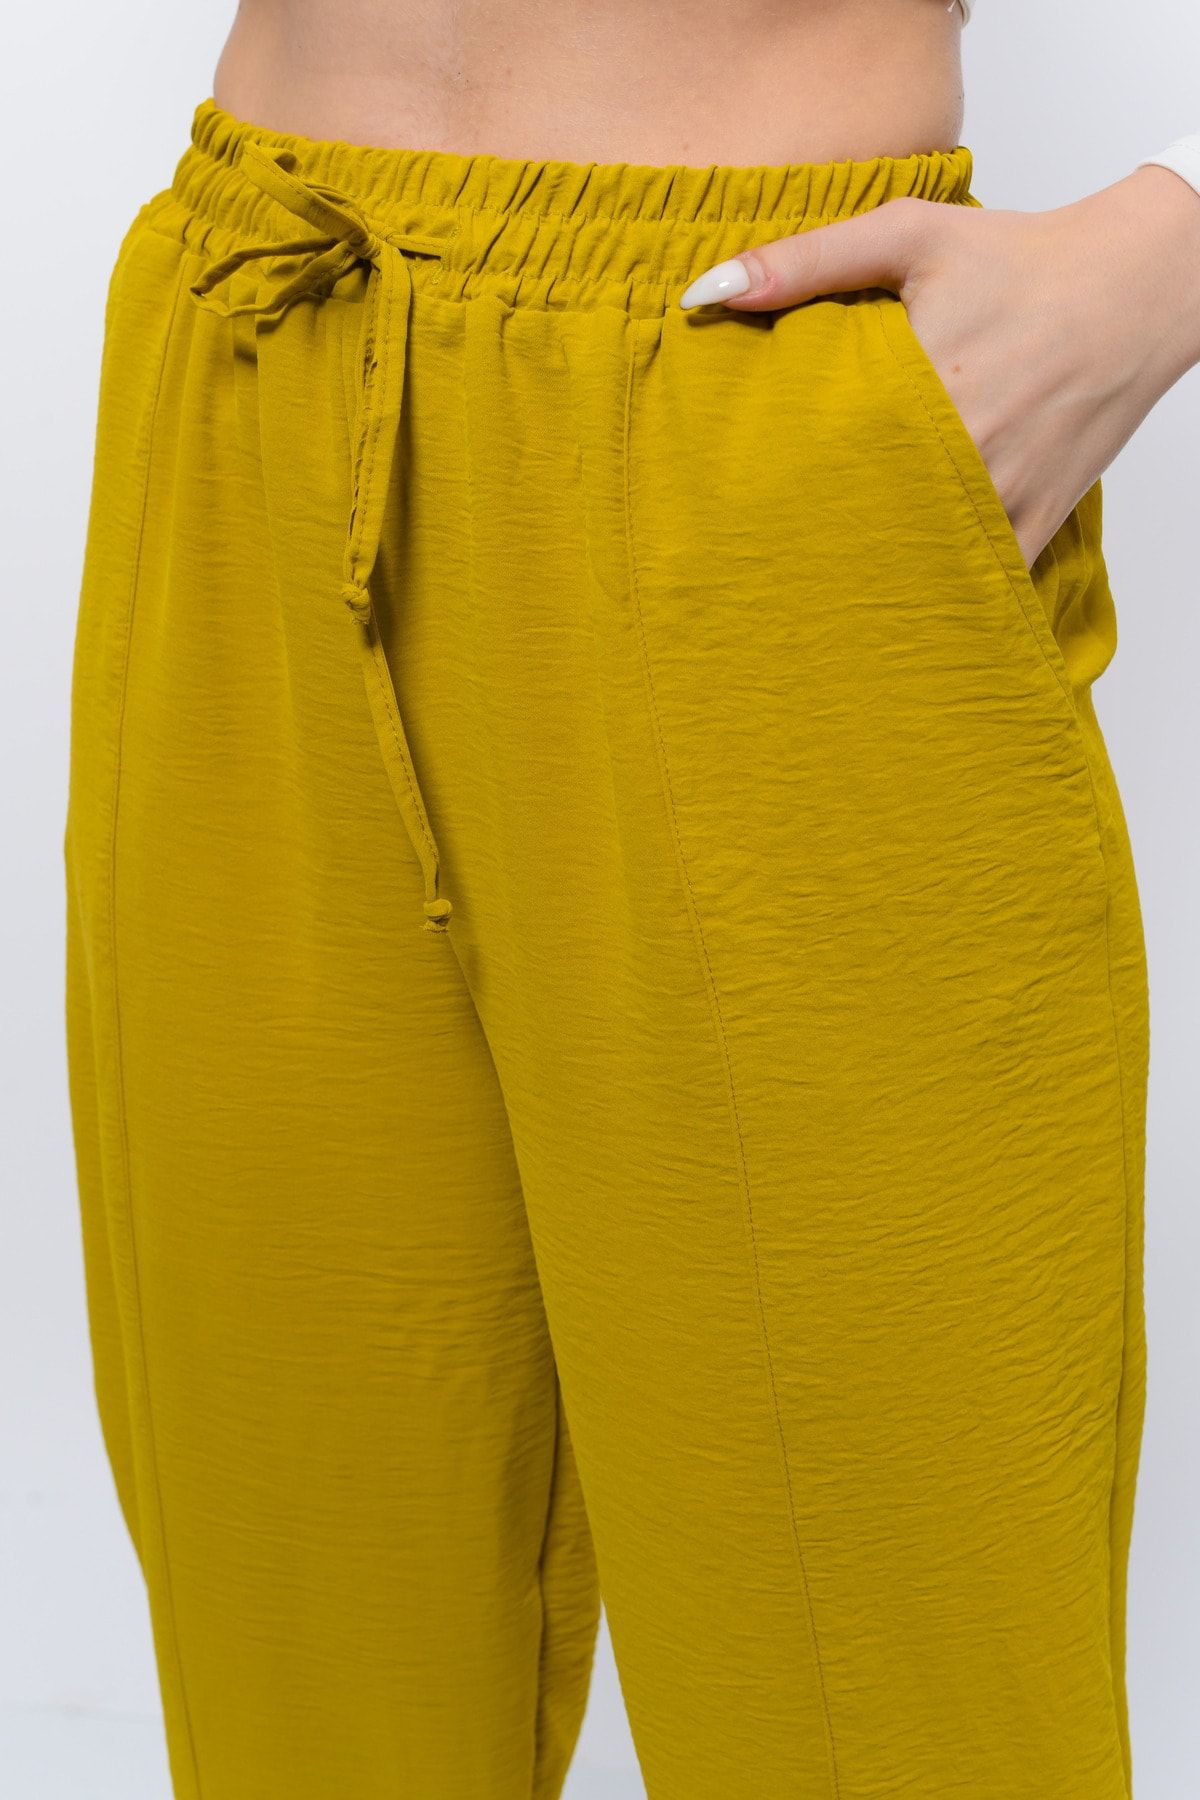 Sh Mağazacılık Ince Yazlık Kadın Yüksek Bel Rahat Salaş Pamuklu Slouchy Fit Basic Beli Lastikli Bilek Boy Pantolon